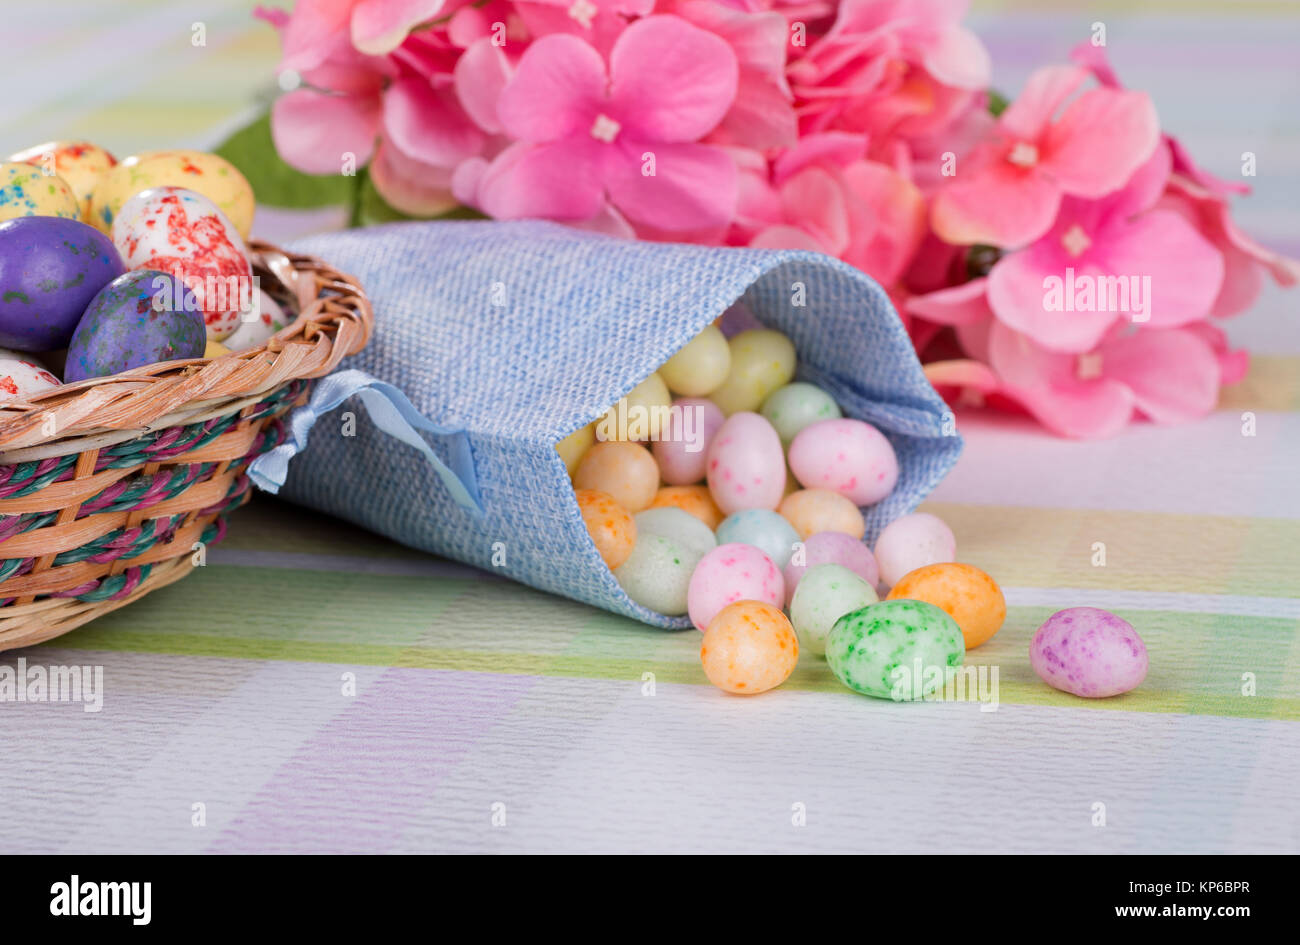 Easter jelly bean candy dans un sac de tissu bleu sur une table Banque D'Images